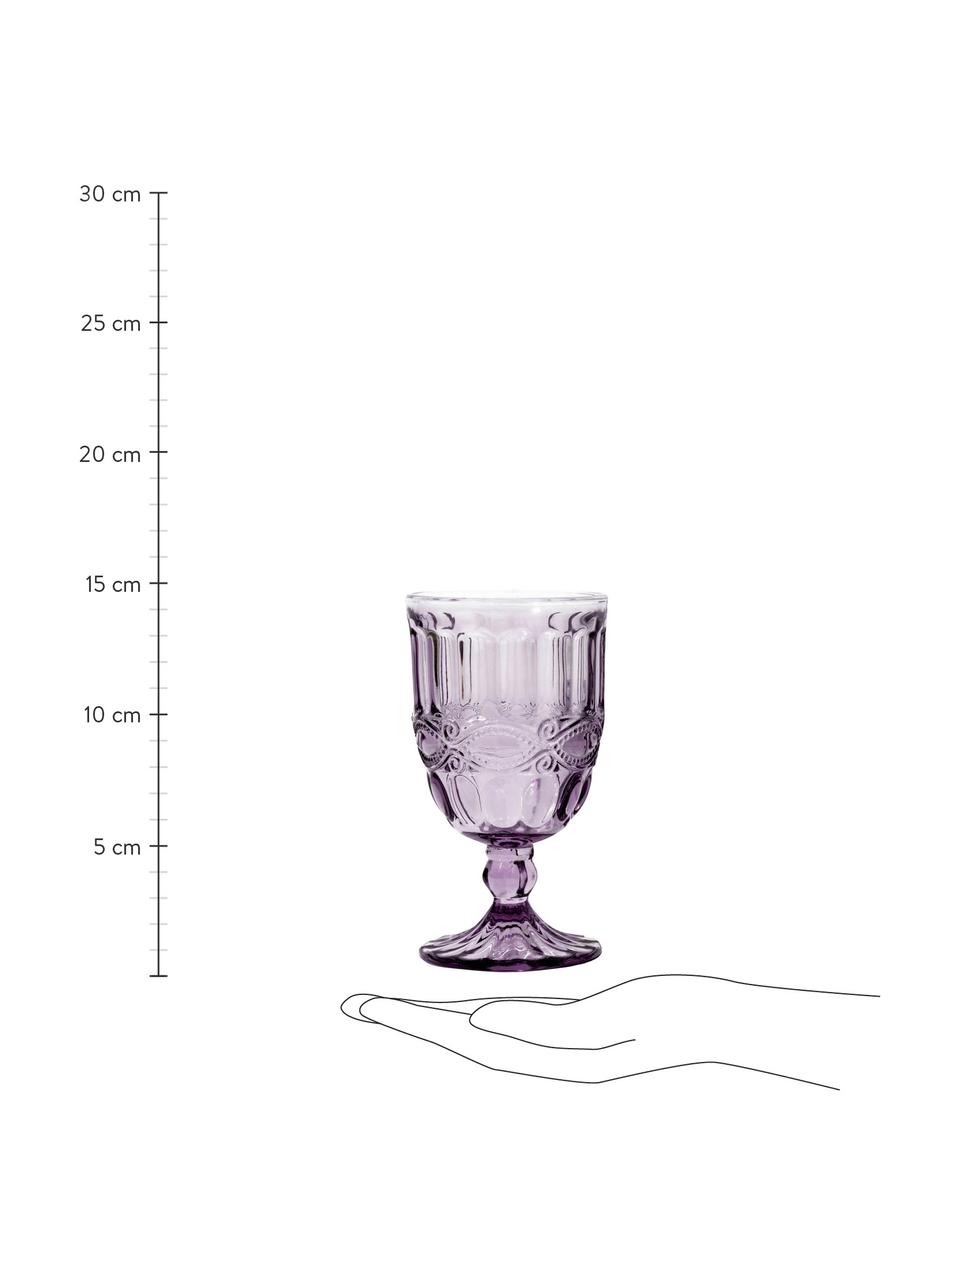 Weingläser Solange mit dekorativem Relief in Lila, 6 Stück, Glas, durchgefärbt, Transparent, Lila, Ø 8 x H 15 cm